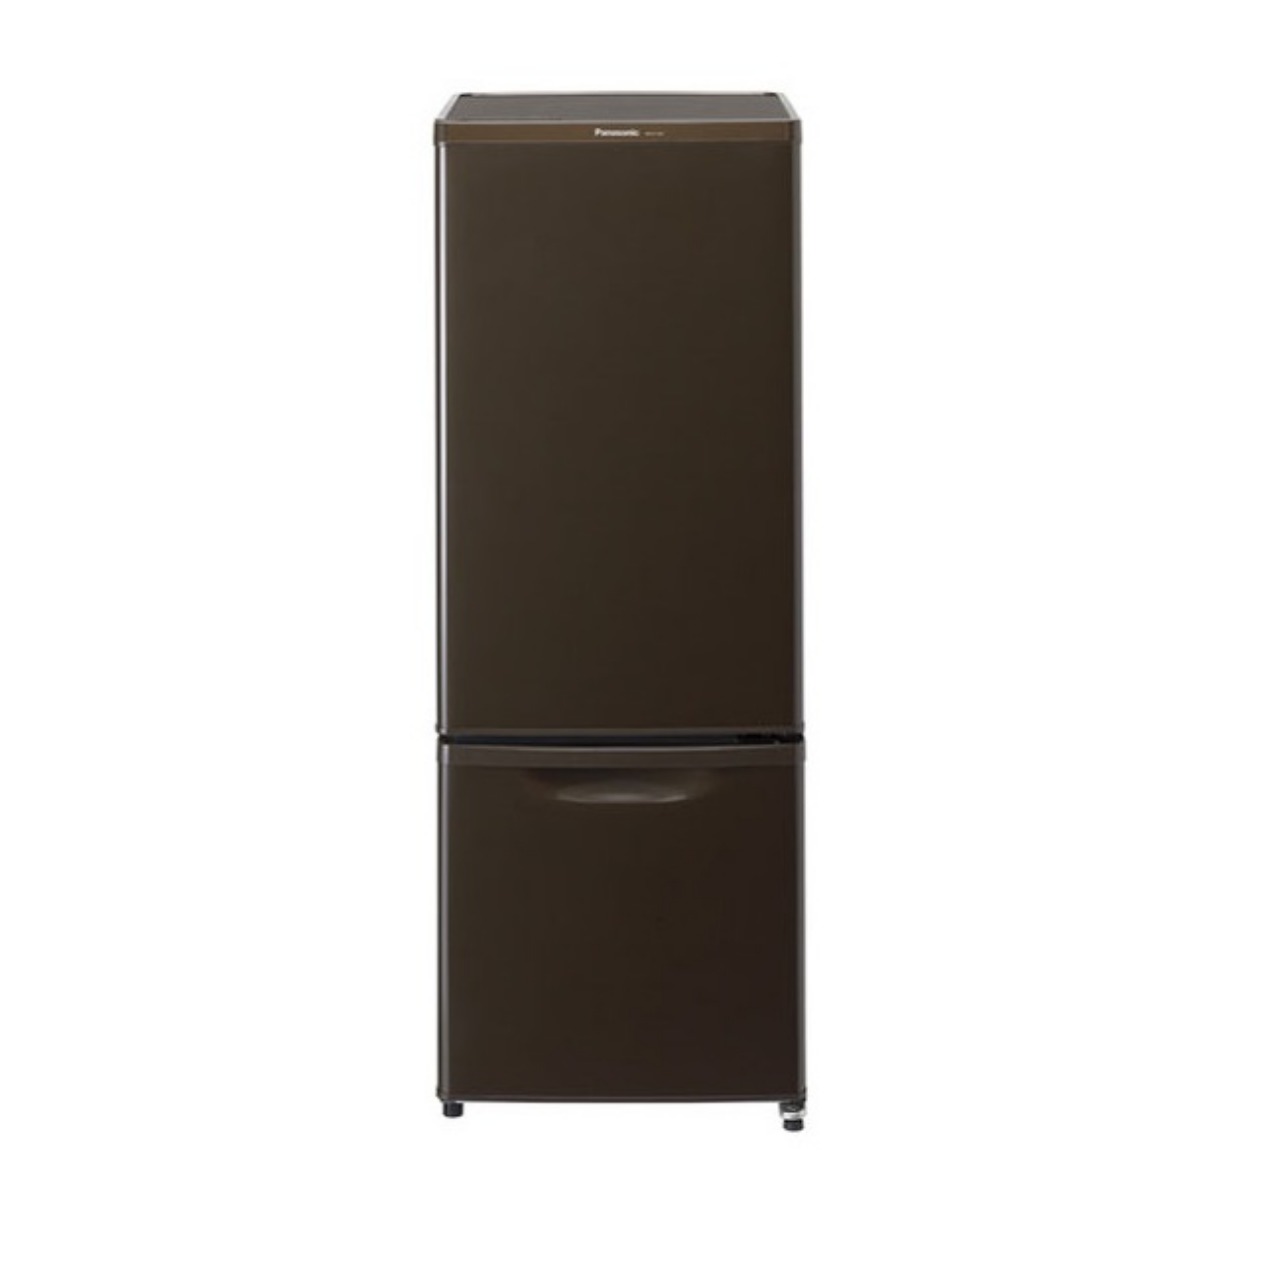 パナソニックNR-B17AW冷蔵庫が激安価格で買える | 家電を激安な価格で買う